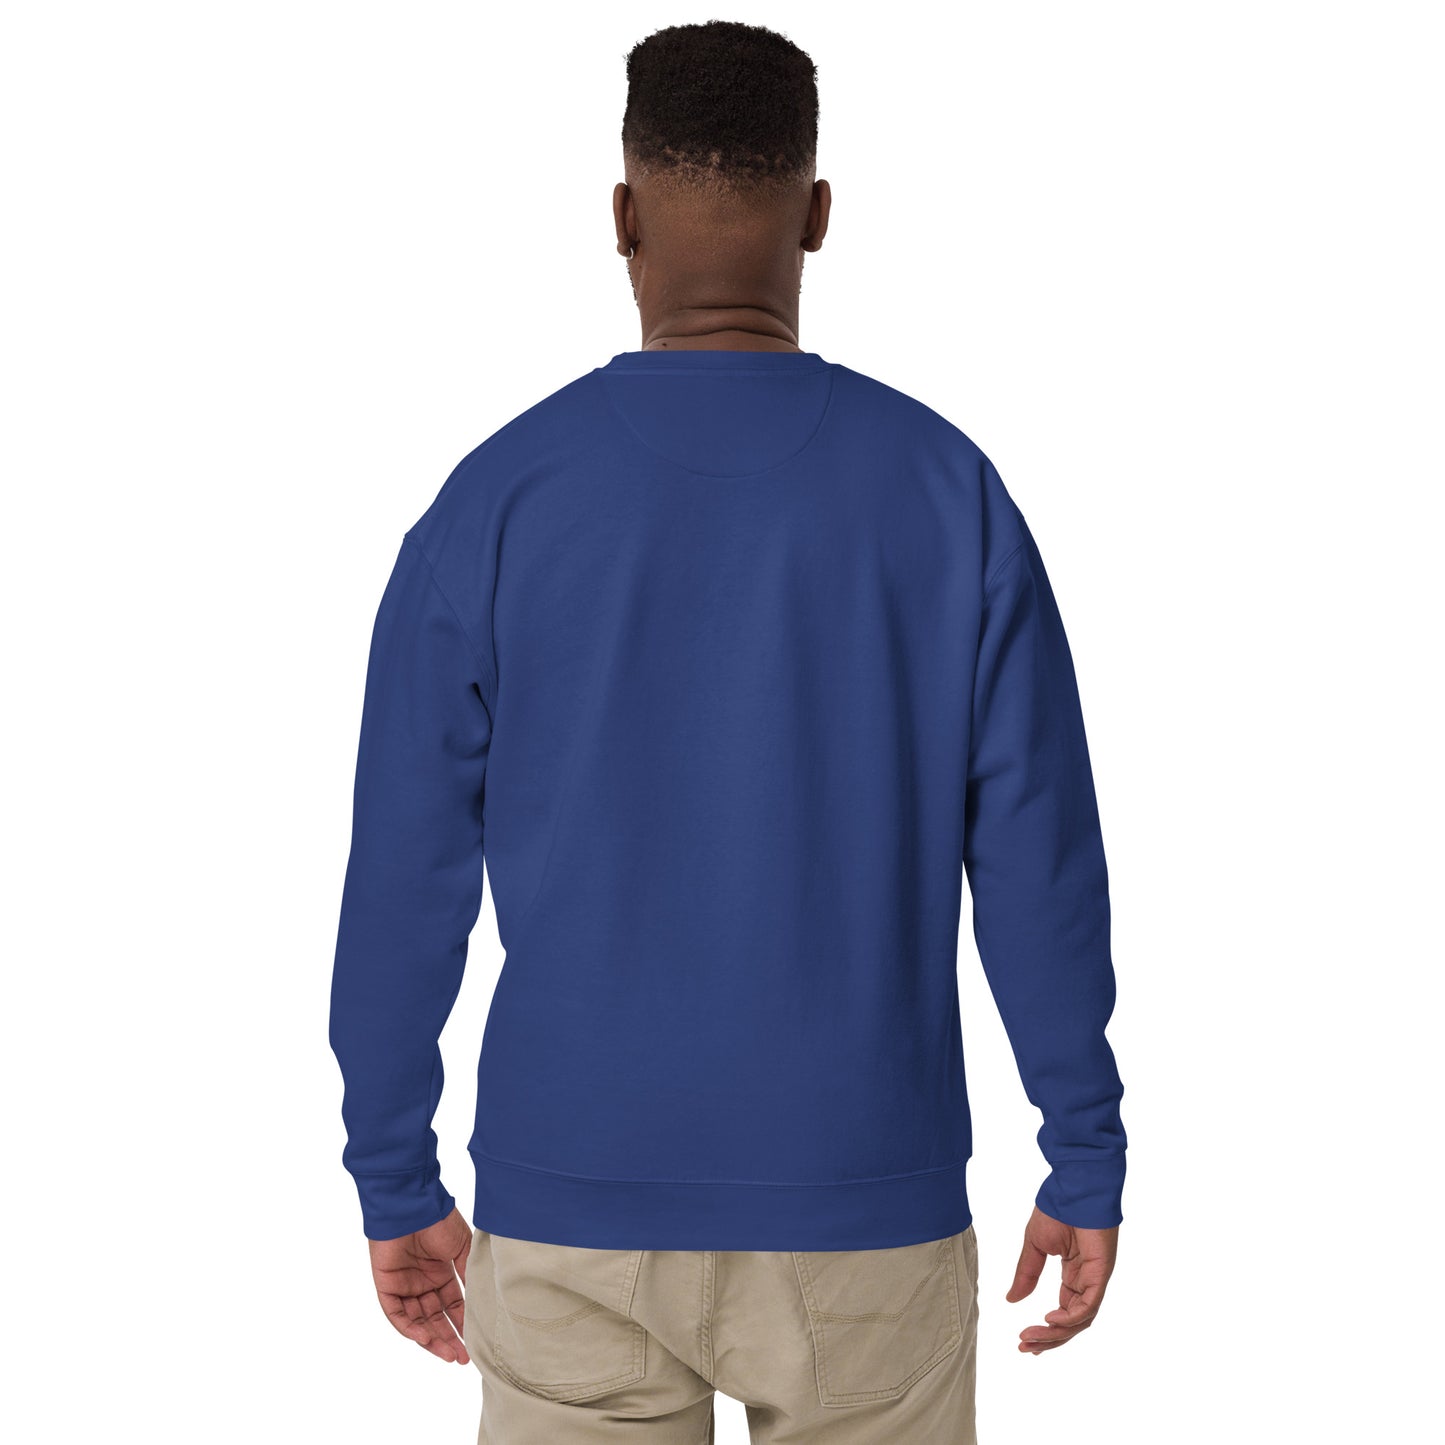 Da Life Premium Sweatshirt